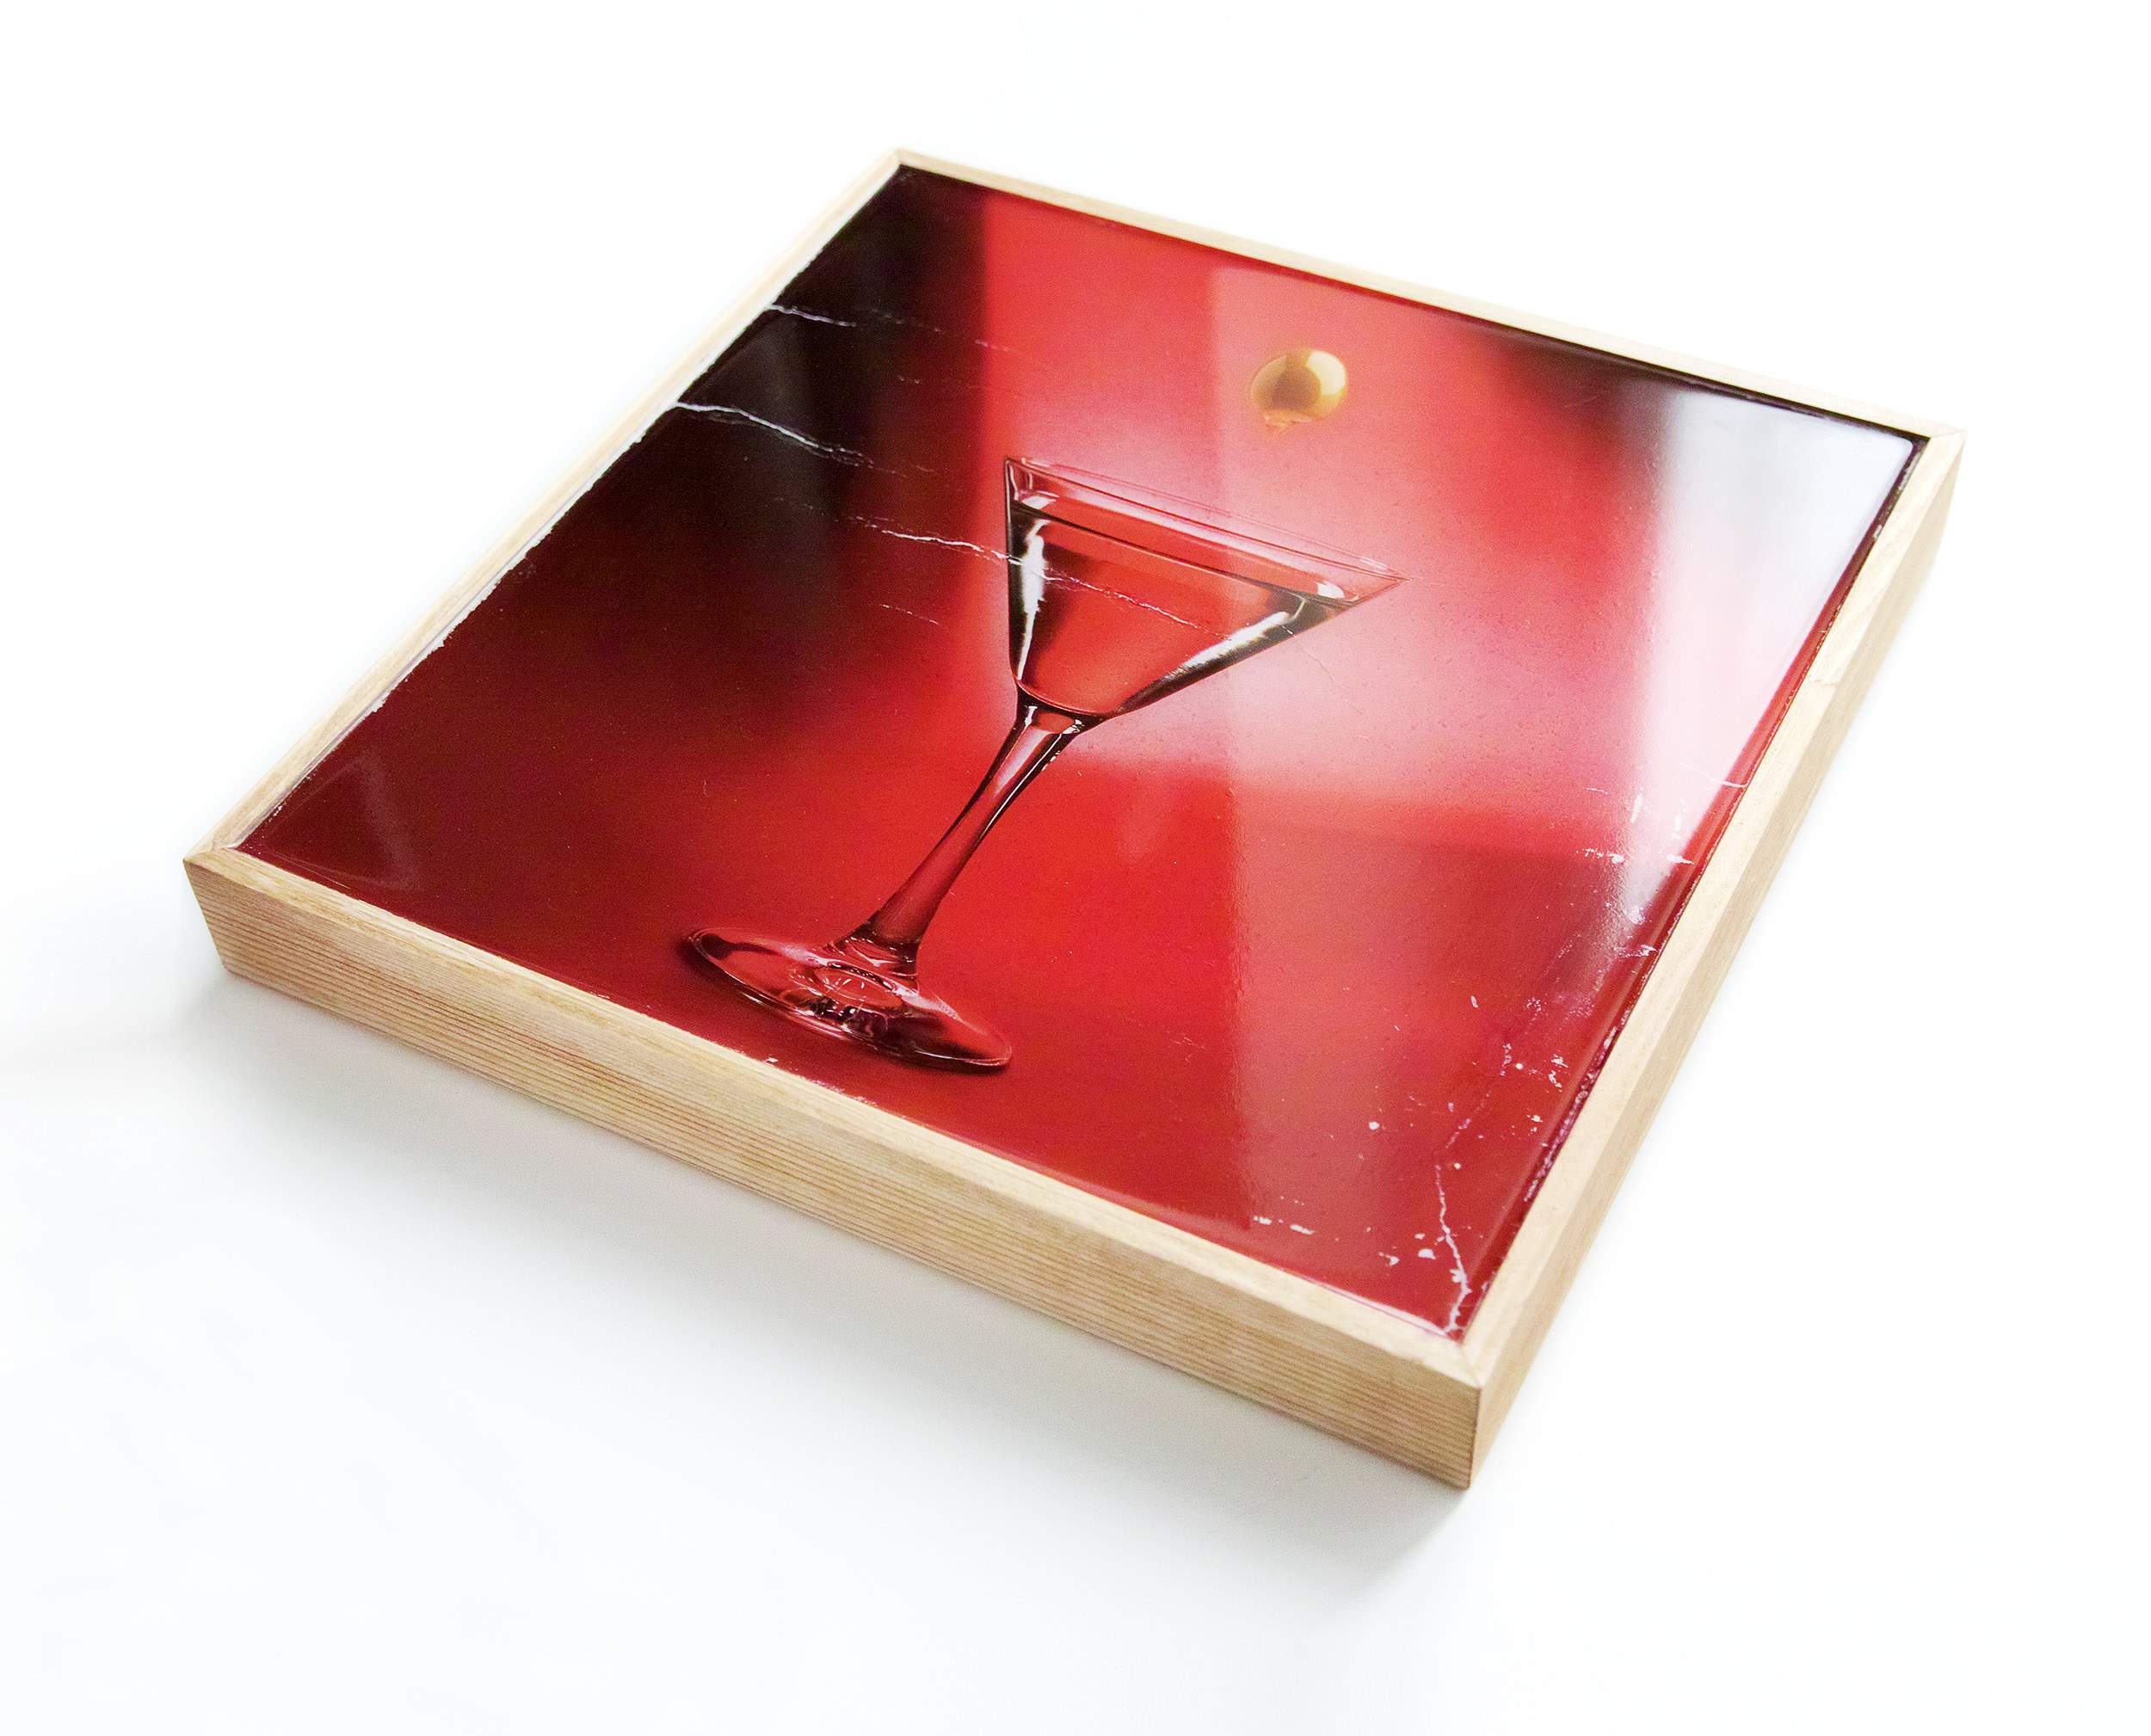 Stampa fotografica su tavola di legno rifinita con resina epossidica